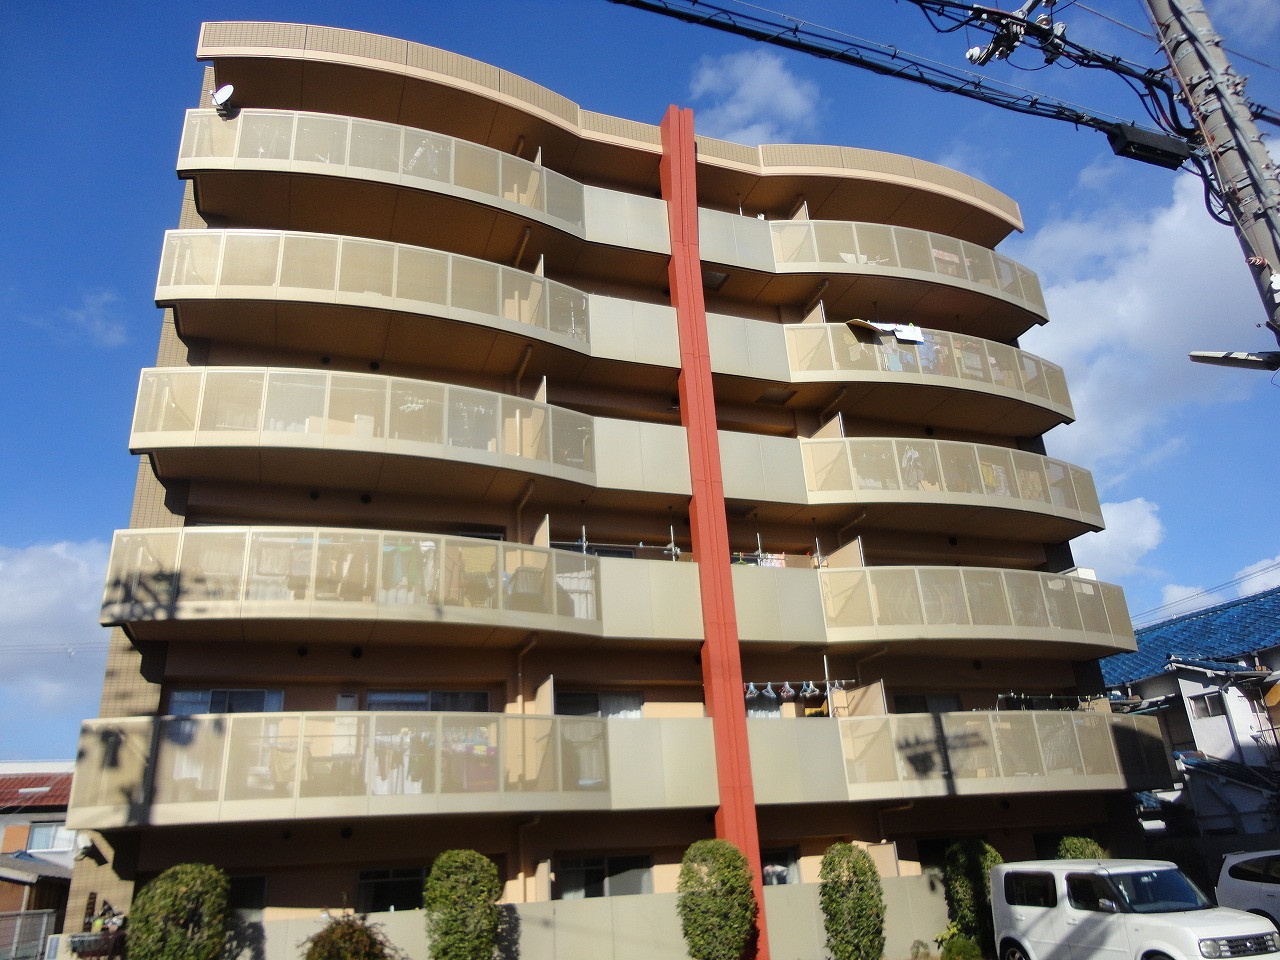 入居率が高い大阪のマンション管理会社